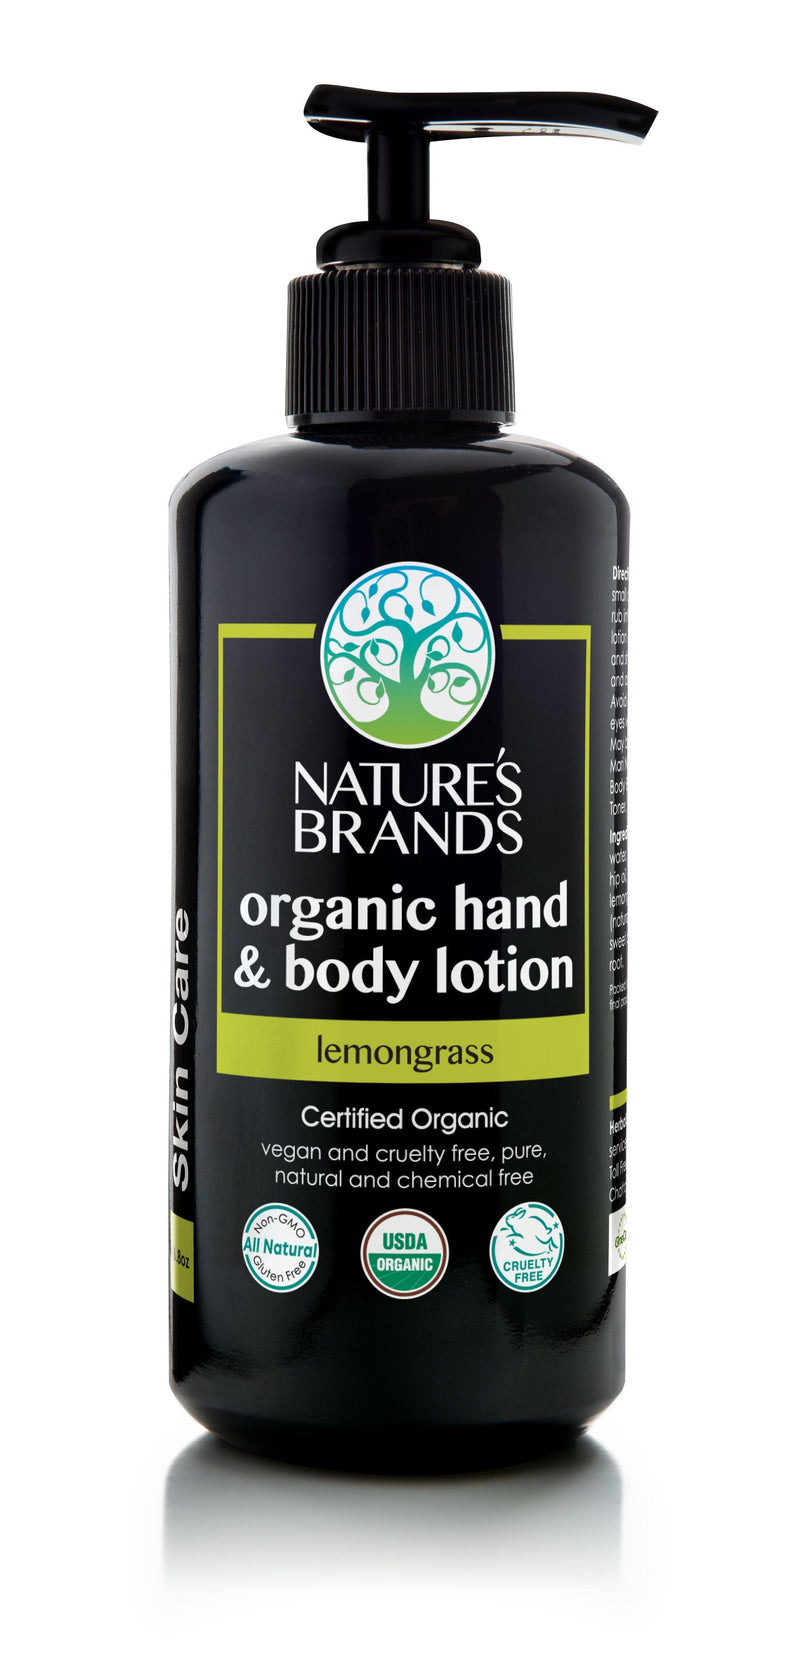 Herbal Choice Mari Organic Hand And Body Lotion, Lemongrass - Herbal Choice Mari Organic Hand And Body Lotion, Lemongrass - Herbal Choice Mari Organic Hand And Body Lotion, Lemongrass